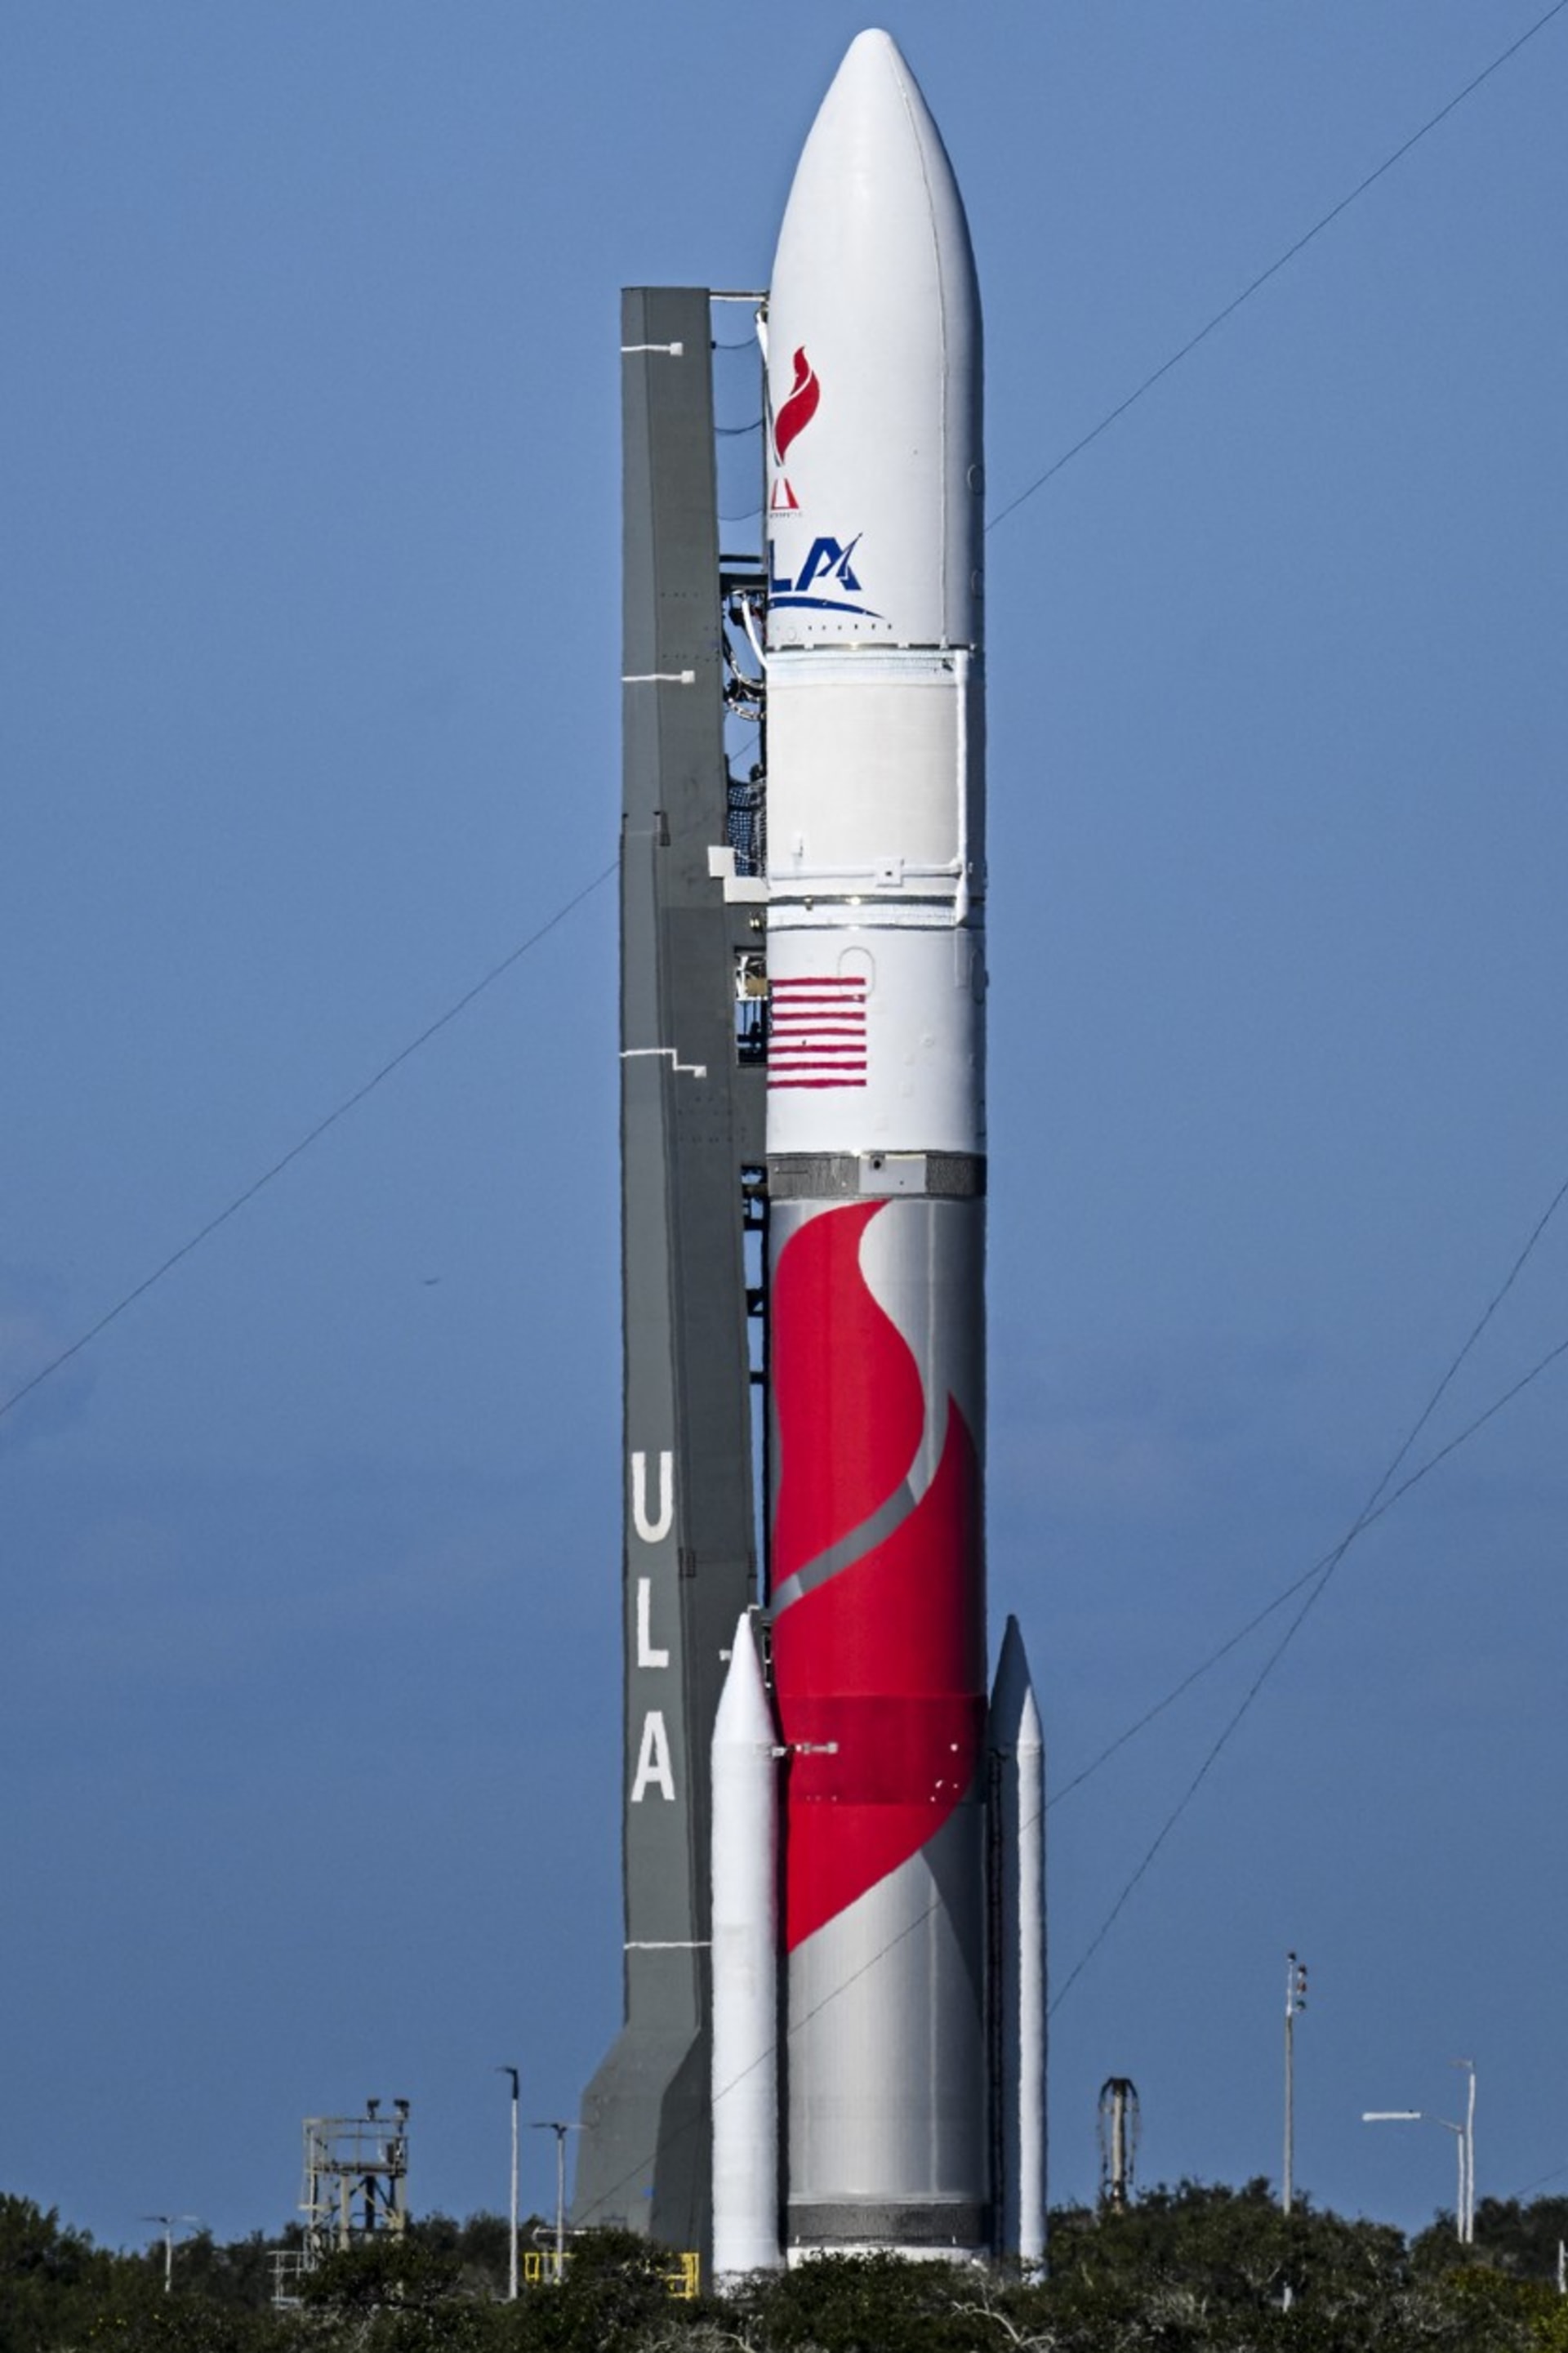 Raketa Vulcan Centaur je vysoká 61,6 metru